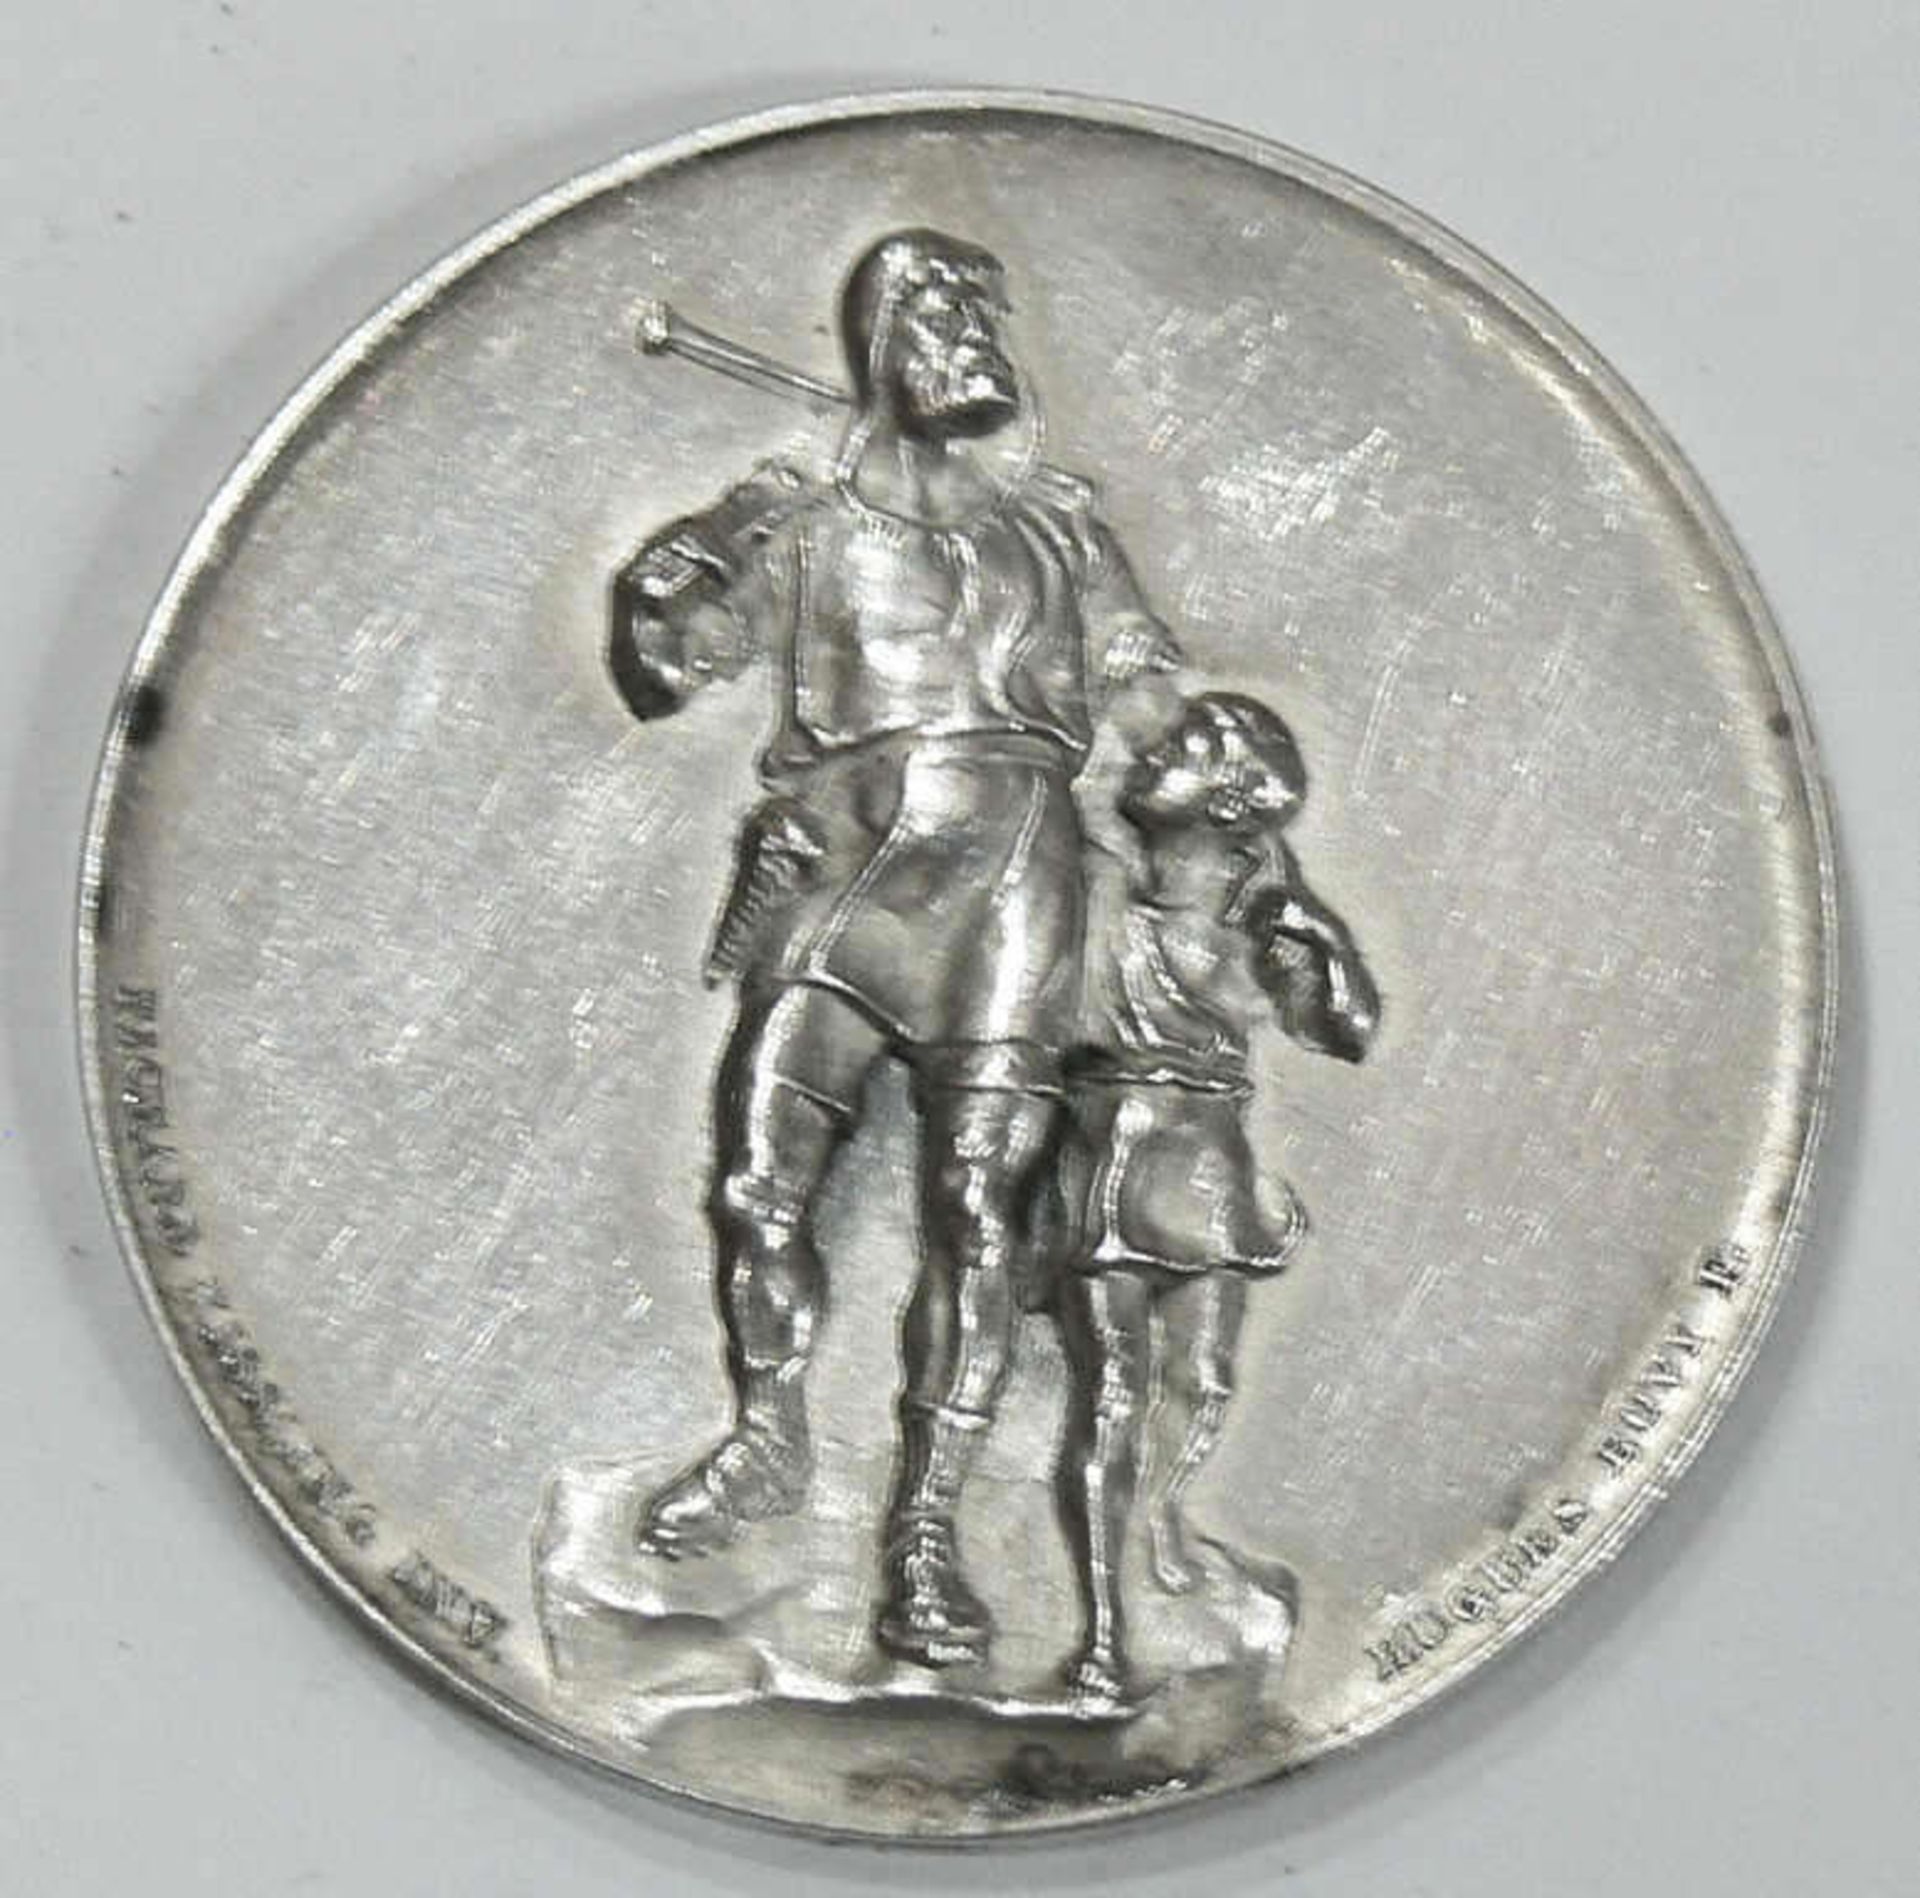 Zürich 1893, Medaille Kantonalschützenfest in Zürich, Silber. Von Richard Kissling. Vorderseite: